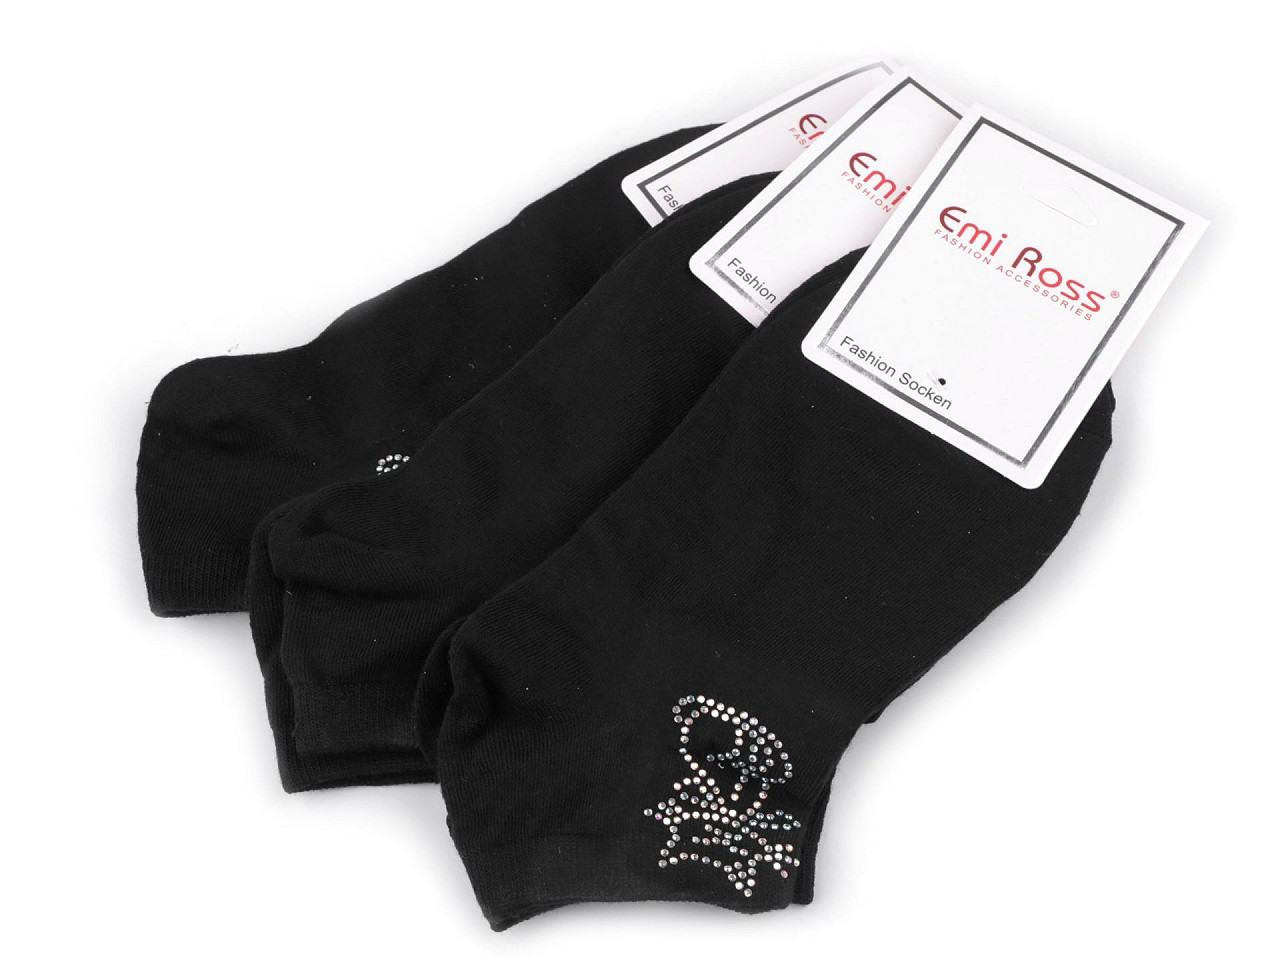 Dámské bavlněné ponožky kotníkové s kamínky Emi Ross, barva 46 (35-38) černá